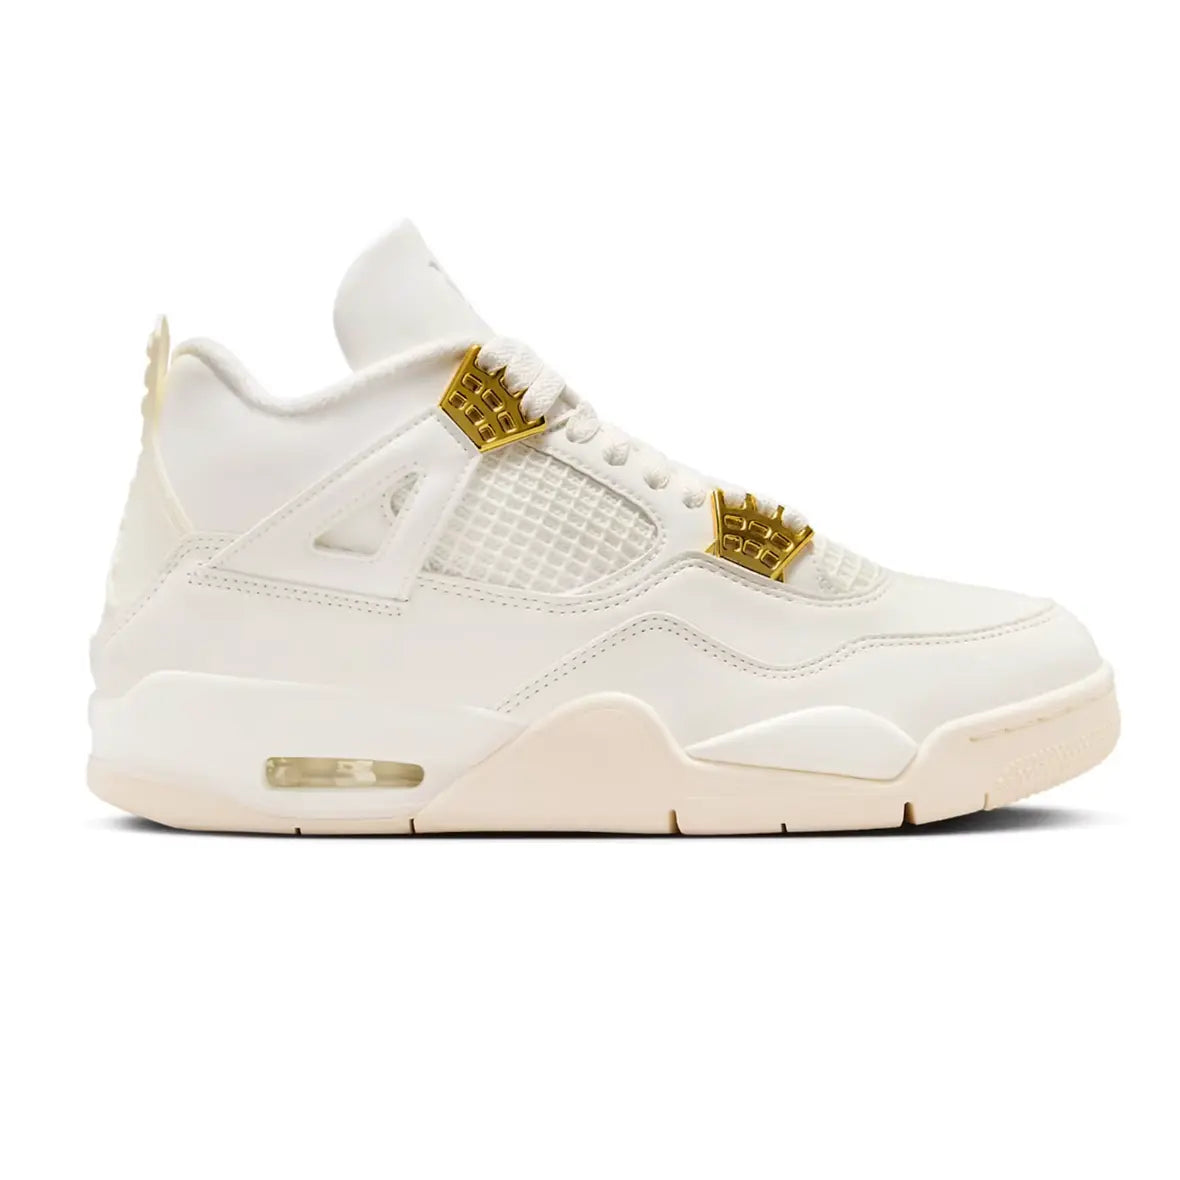 Jordan 4 Retro Metallic Gold - SA Sneakers